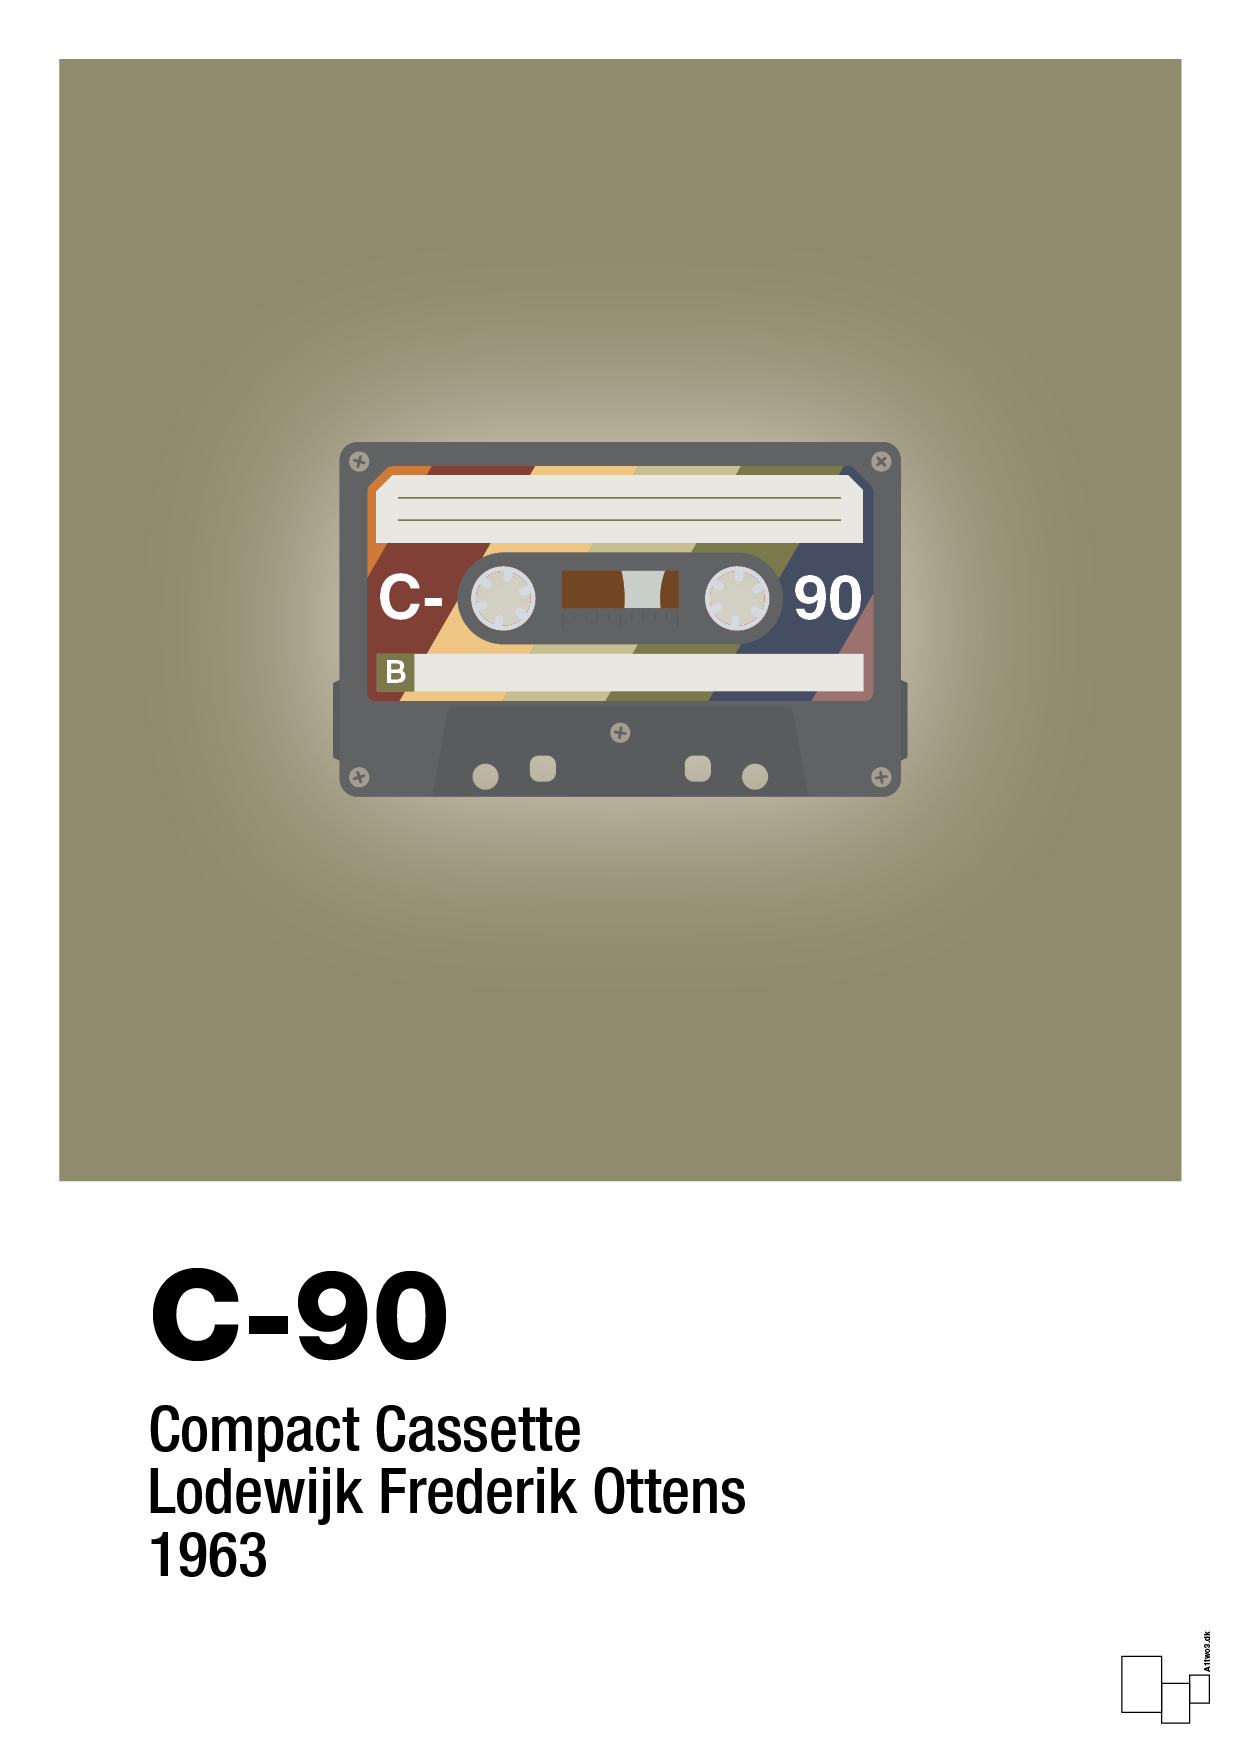 kassettebånd c-90 - Plakat med Grafik i Misty Forrest